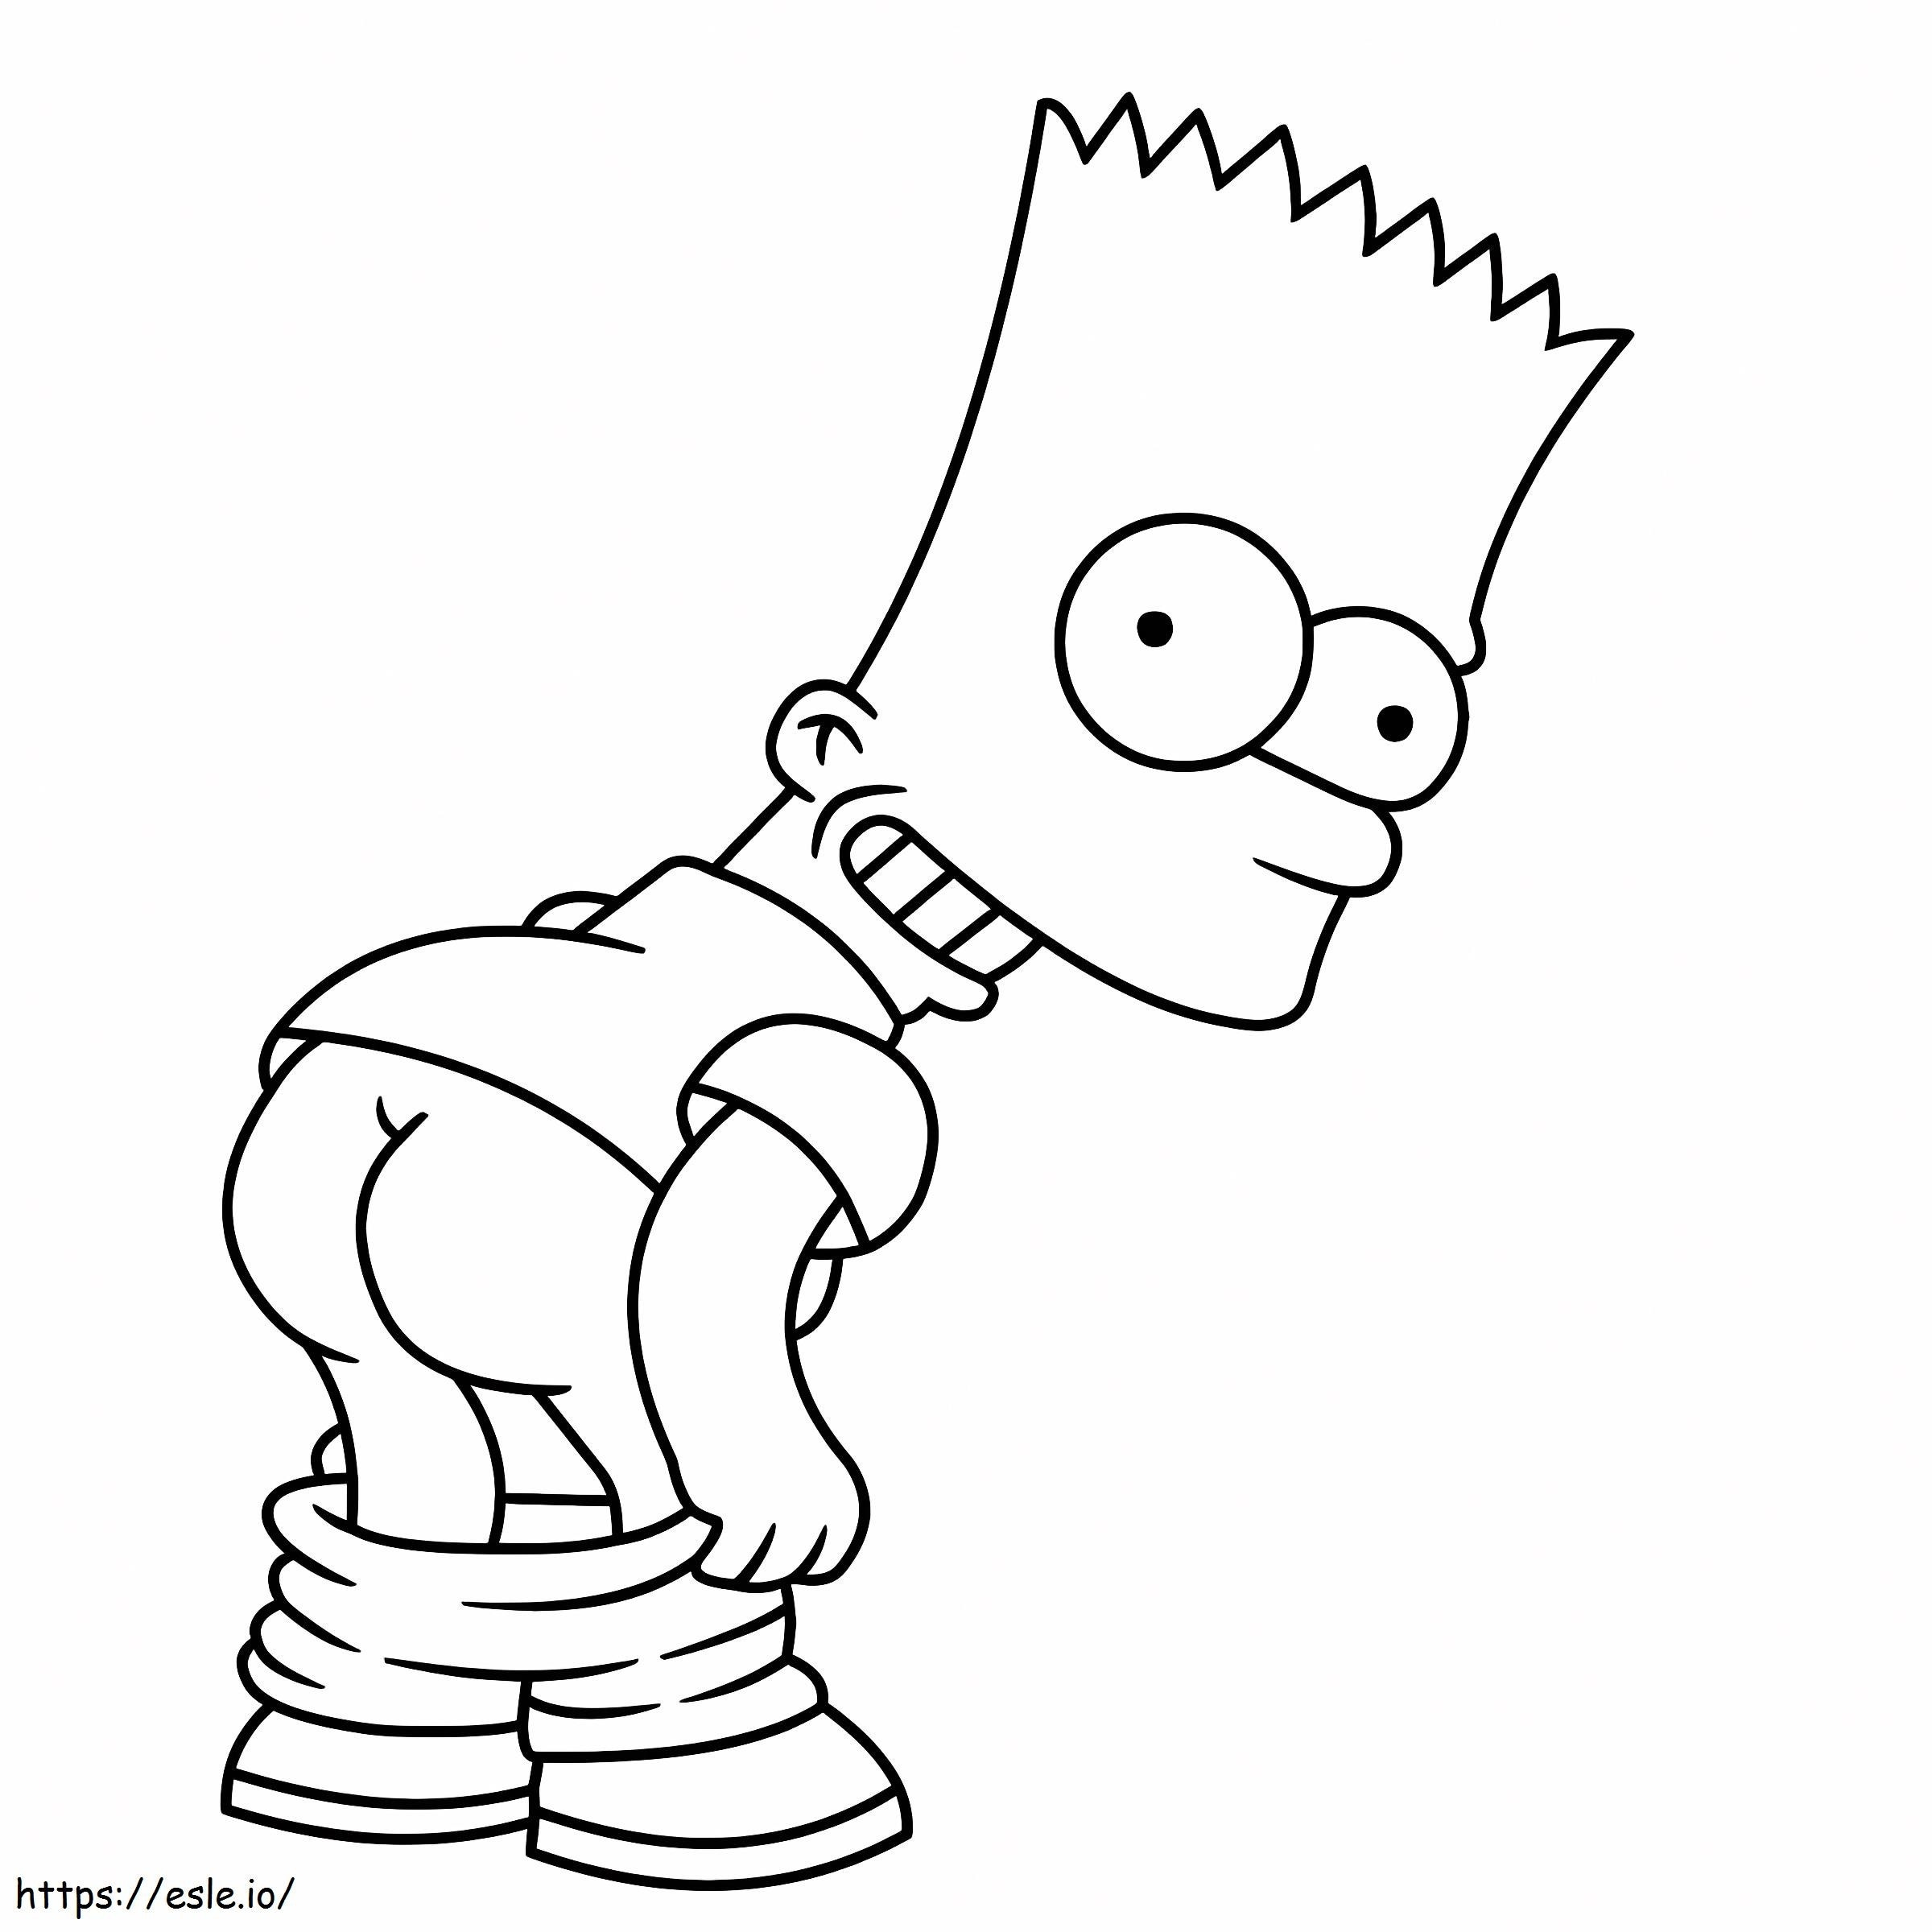 Coloriage Bart Simpson est à imprimer dessin